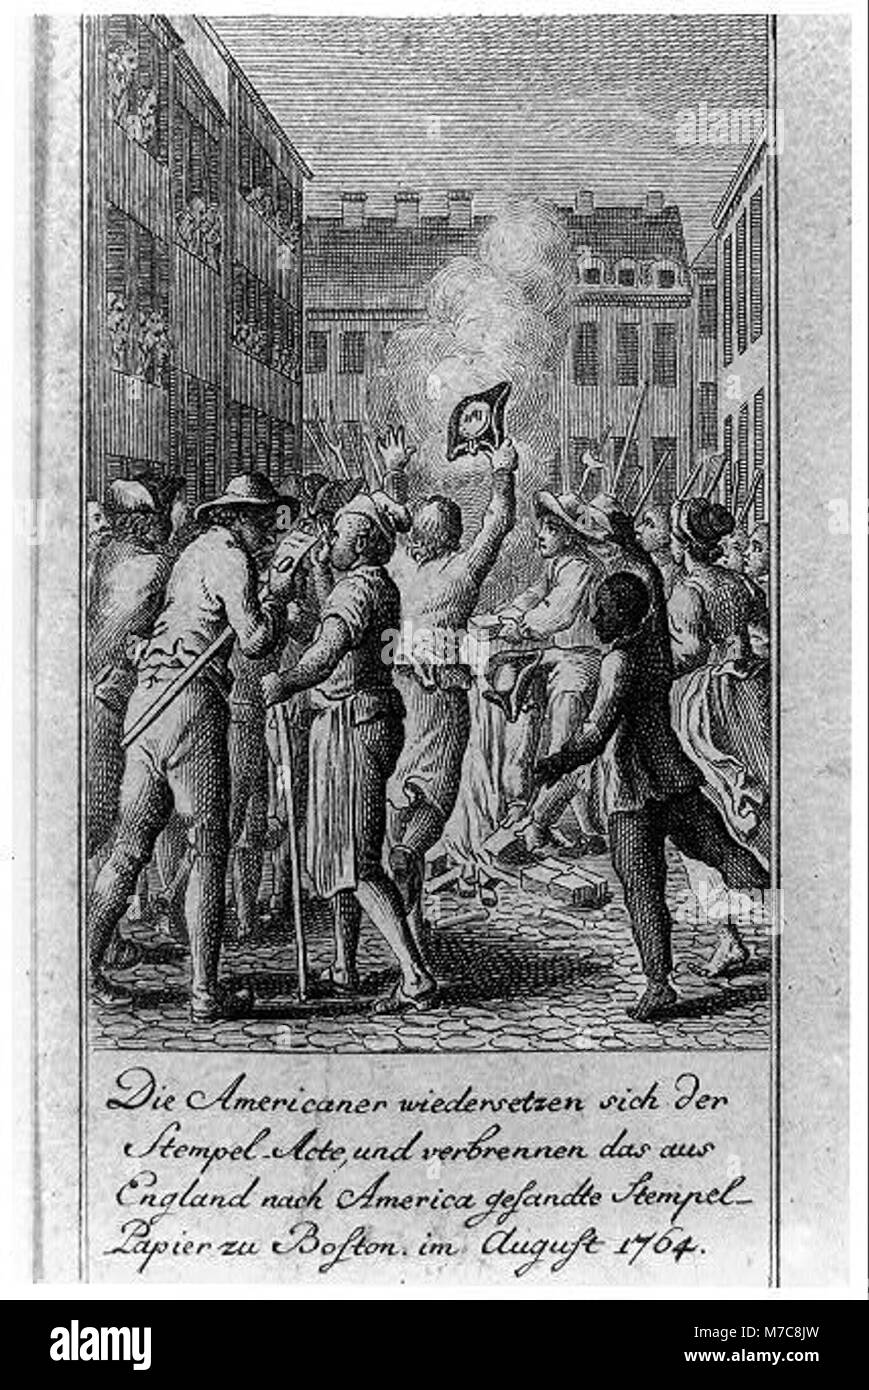 Die Americaner wiedersetzen Stempel-Acte der sich und das verbrennen, aus England nach Nord gesandte Stempel-Papier zu Boston, im August 1764 RCAC2004670197 Banque D'Images